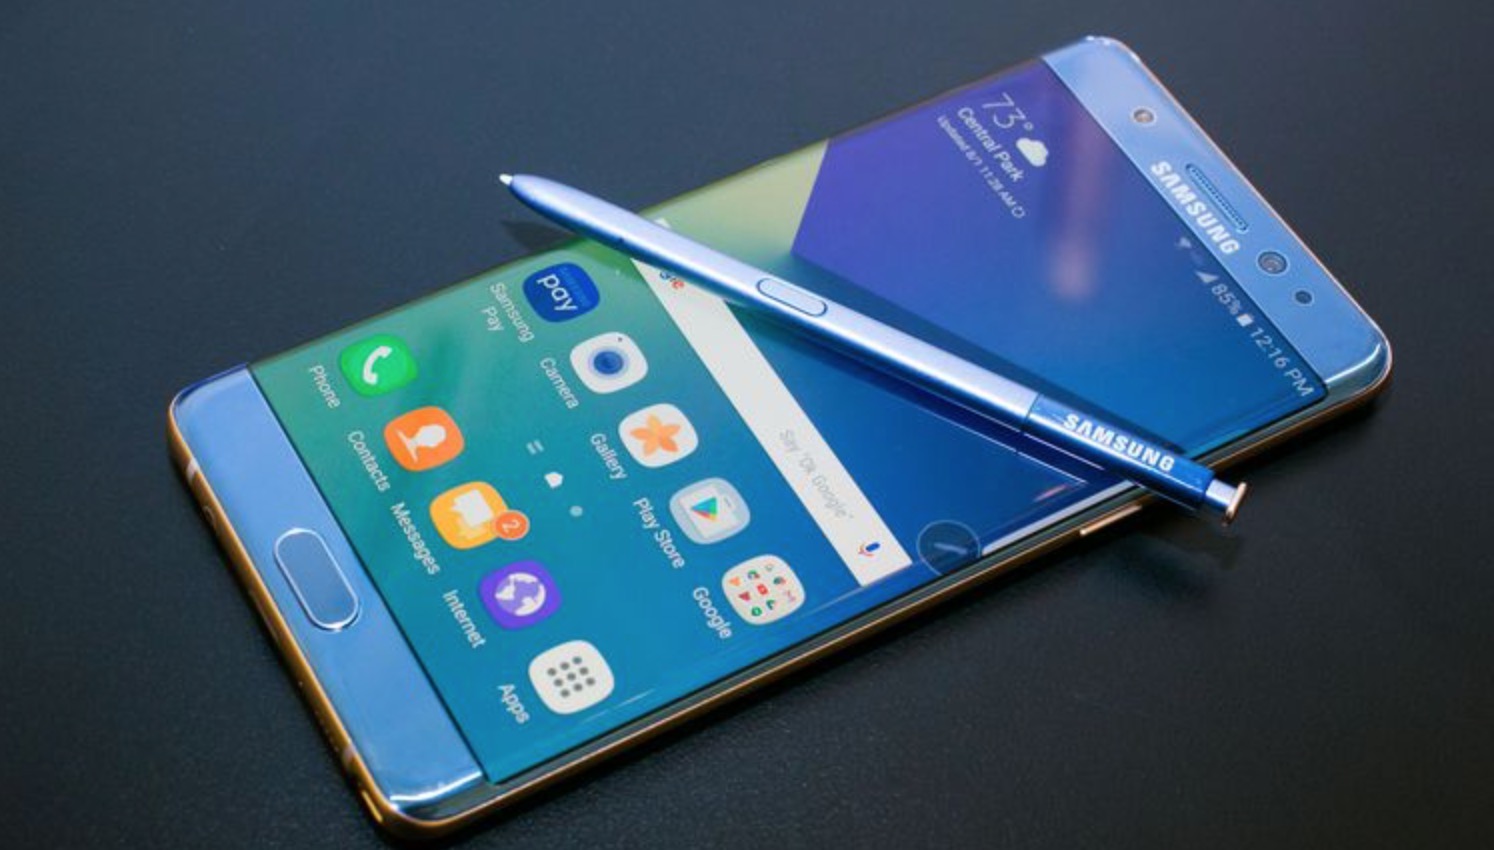 Samsung Galaxy Note 7 aggiornamento disattivazione da remoto